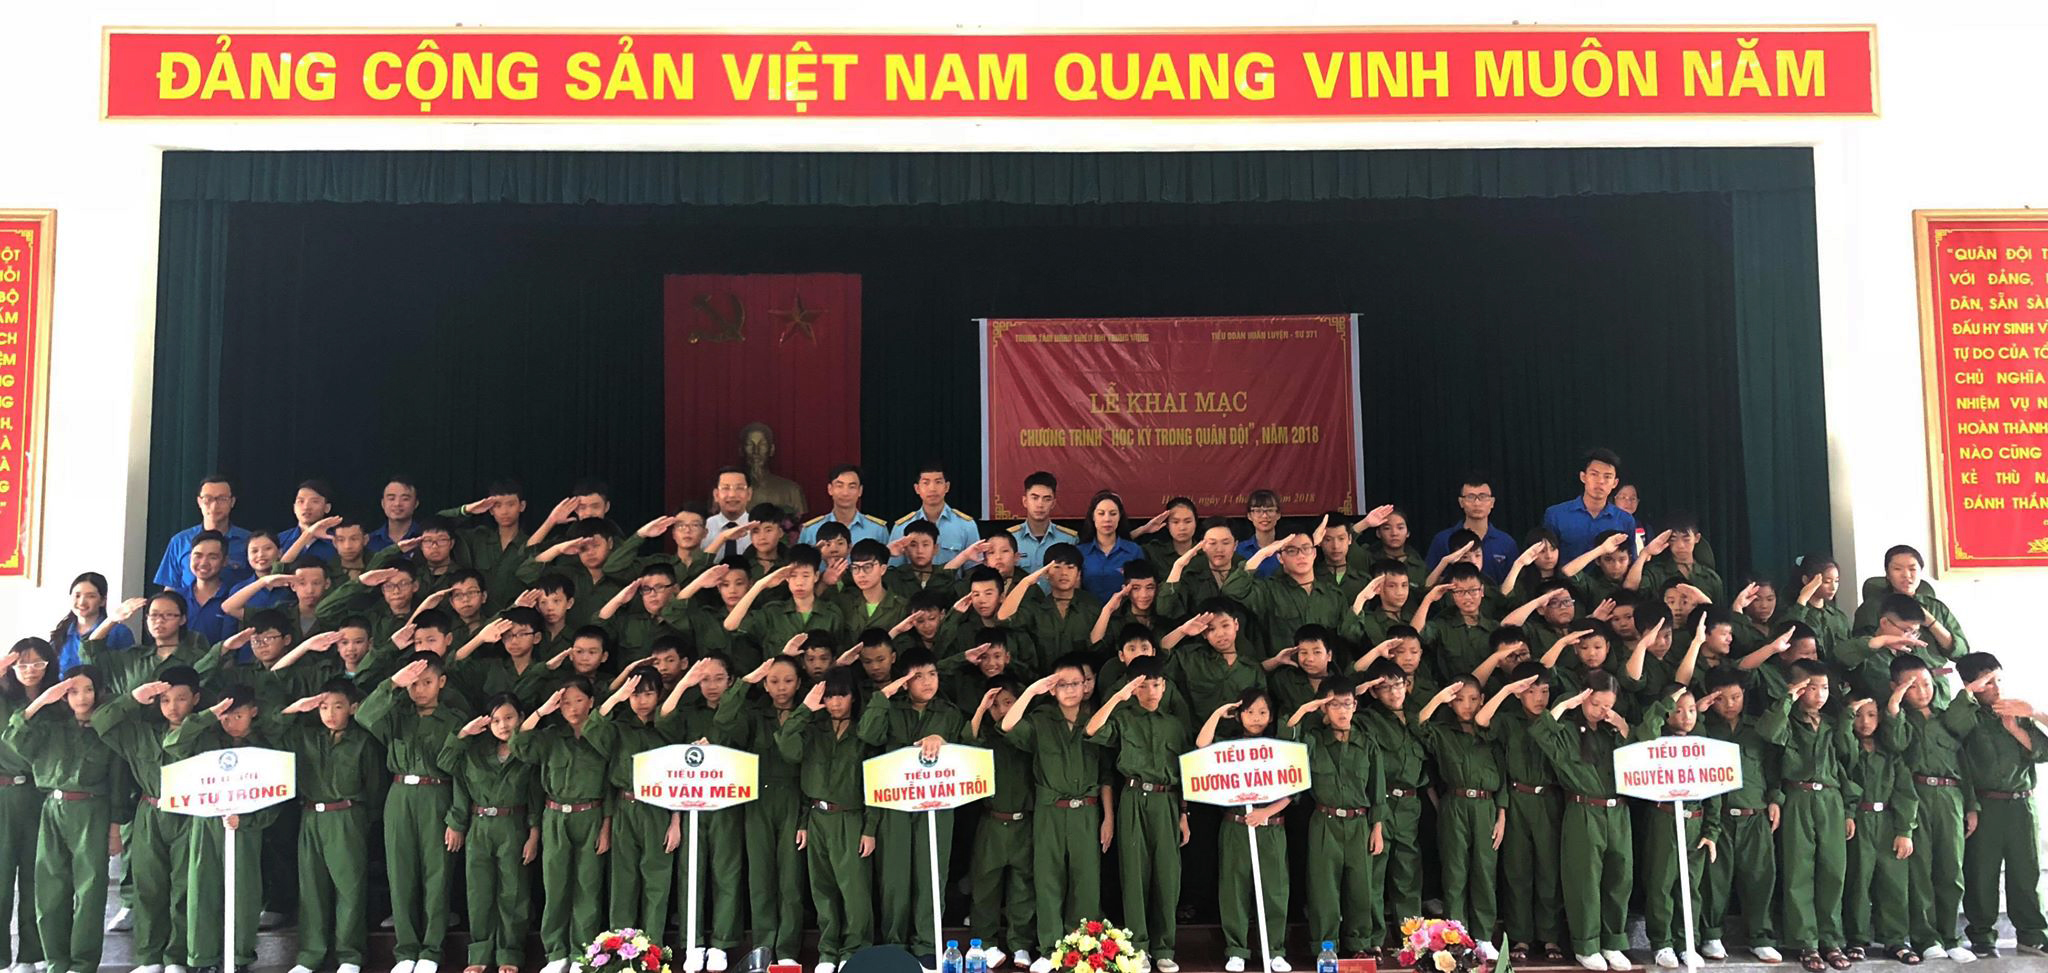 87 chiến sỹ nhí tham gia chương trình Học kỳ trong quân đội năm 2018